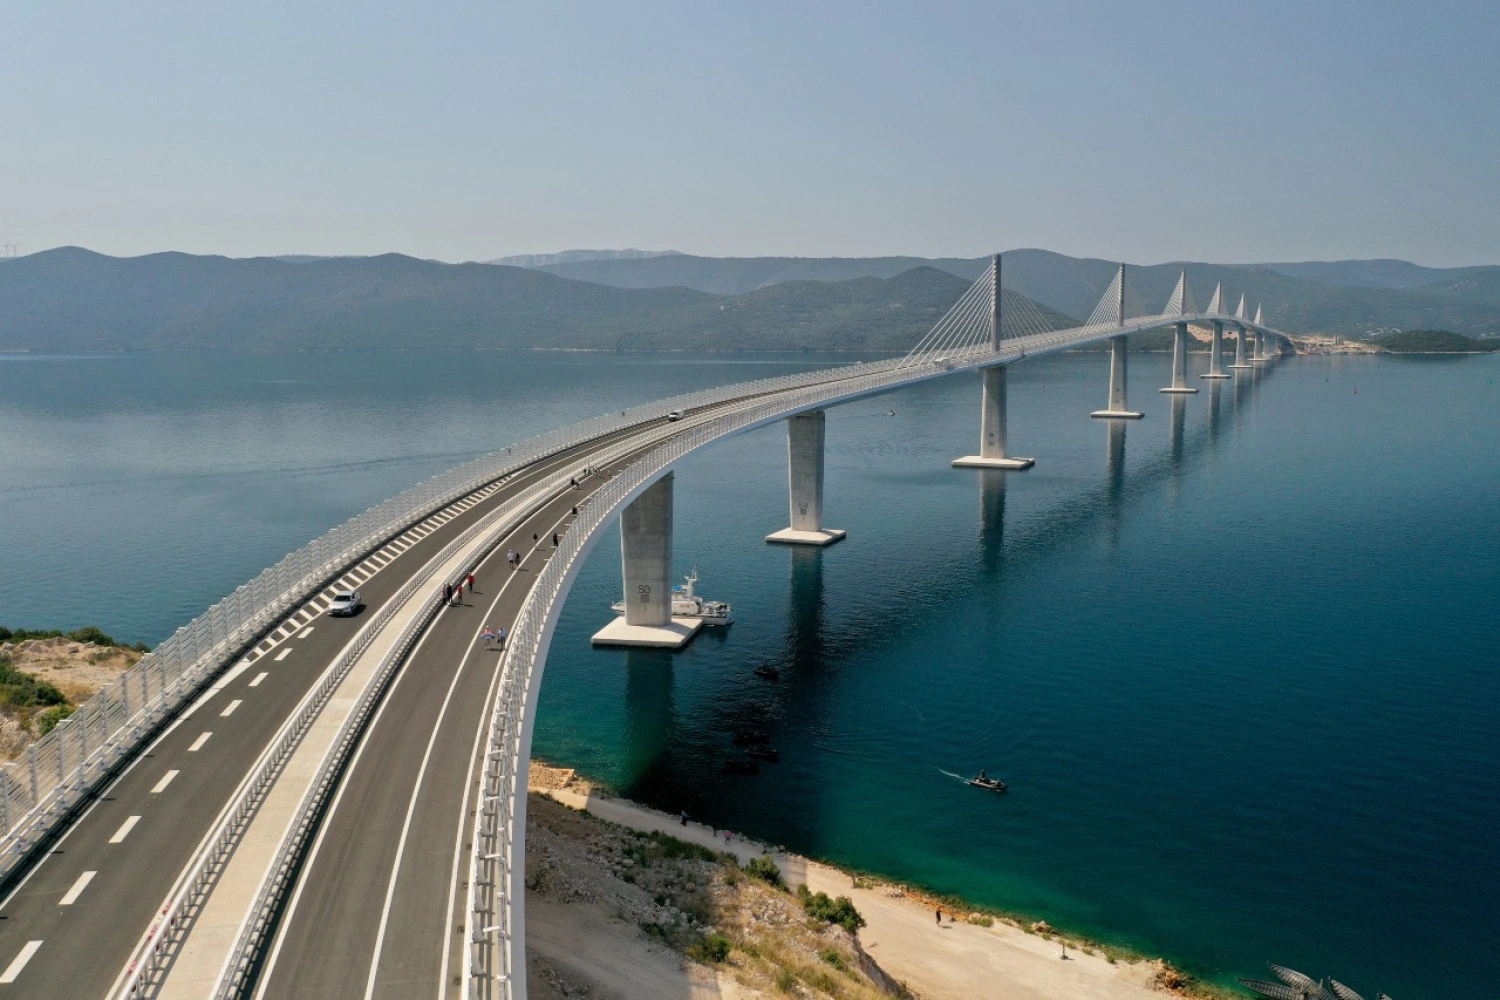 Chystáte sa autom do Dubrovníka? Vďaka Peljašackému mostu môžete obísť Bosnu